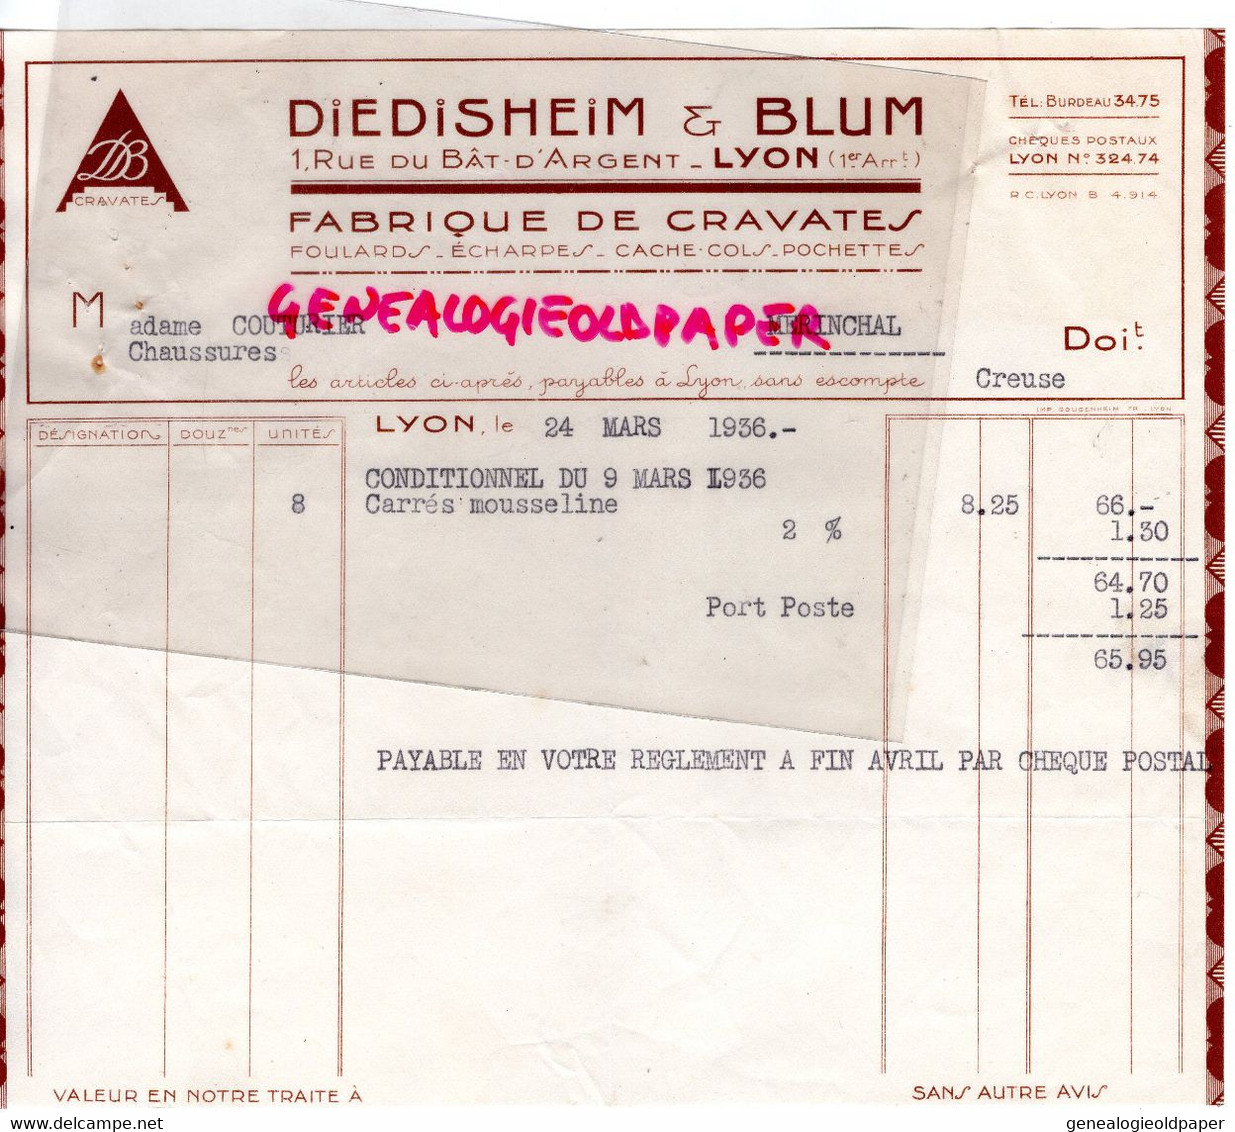 69- LYON- RARE FACTURE DIEDISHEIM & BLUM- FABRIQUE CRAVATES FOULARDS- MME COUTURIER MERINCHAL- 1936 - Kleidung & Textil